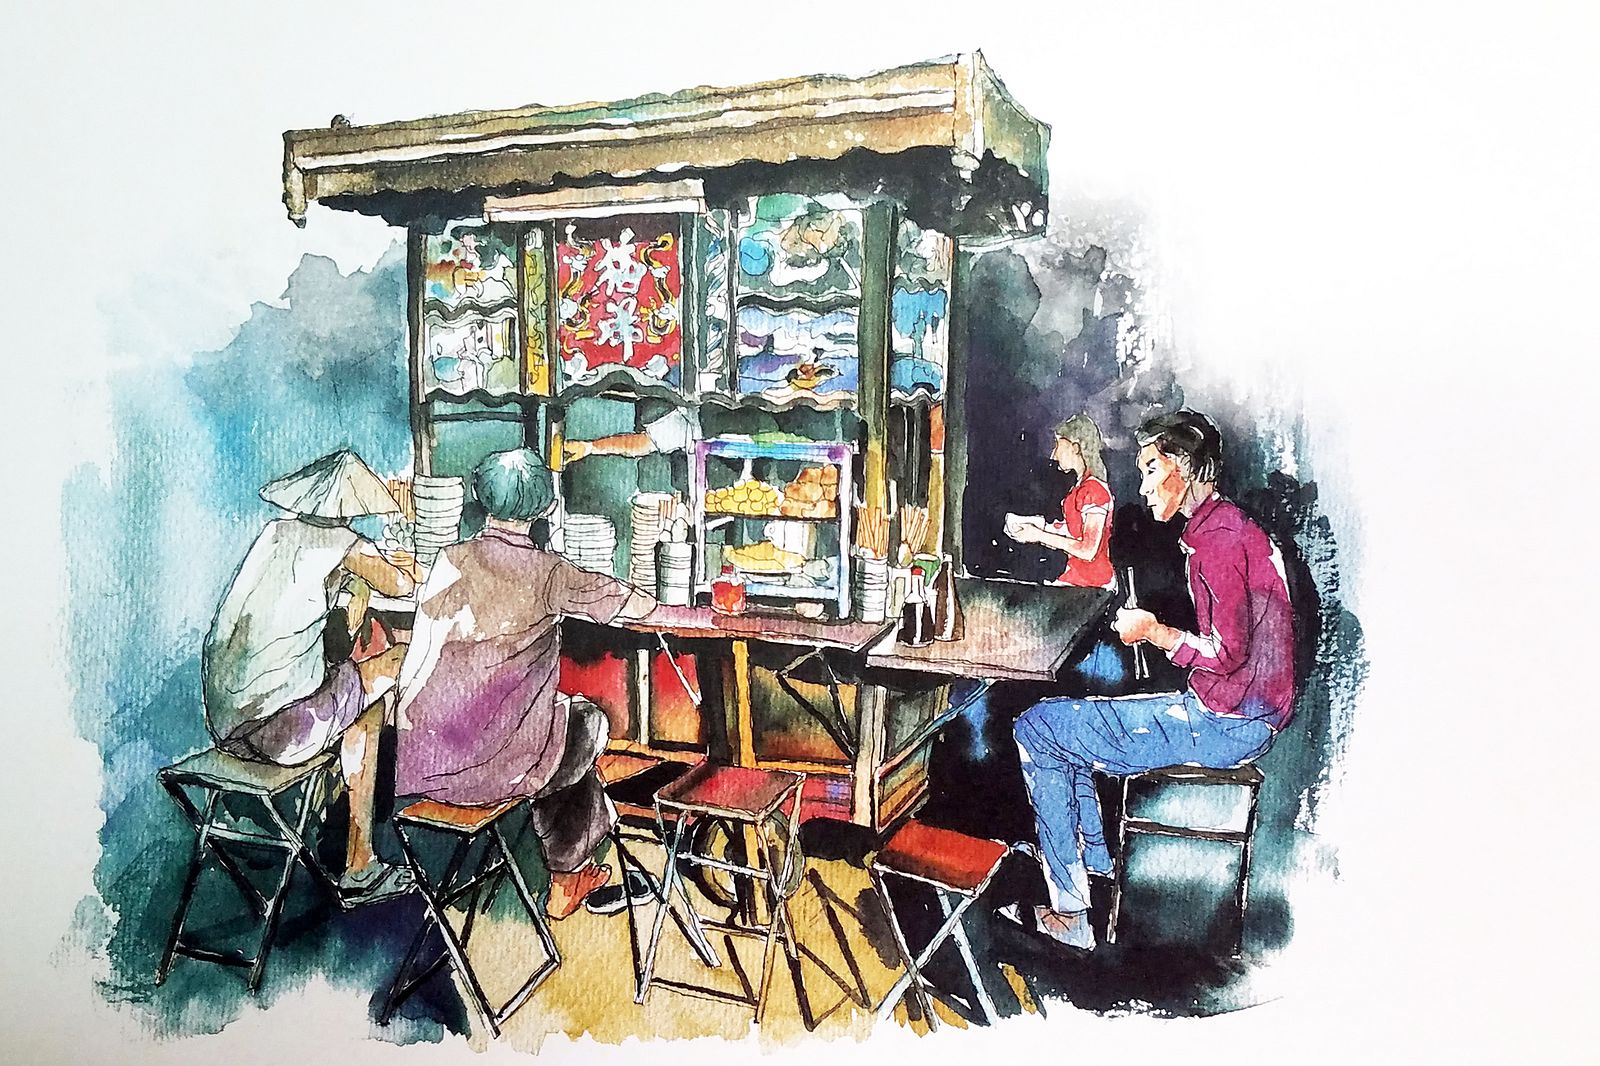 Watercolor Saigon Sketches là bộ sưu tập tranh nước đầy màu sắc về thành phố Sài Gòn. Những bức tranh được vẽ tinh tế và chân thực như một bức ảnh chụp lại cuộc sống động đầy màu sắc của người dân Sài Thành. Hãy ngắm nhìn các bức tranh vẽ tuyệt đẹp này để chiêm ngưỡng vẻ đẹp mộc mạc và hiện đại của Sài Gòn.